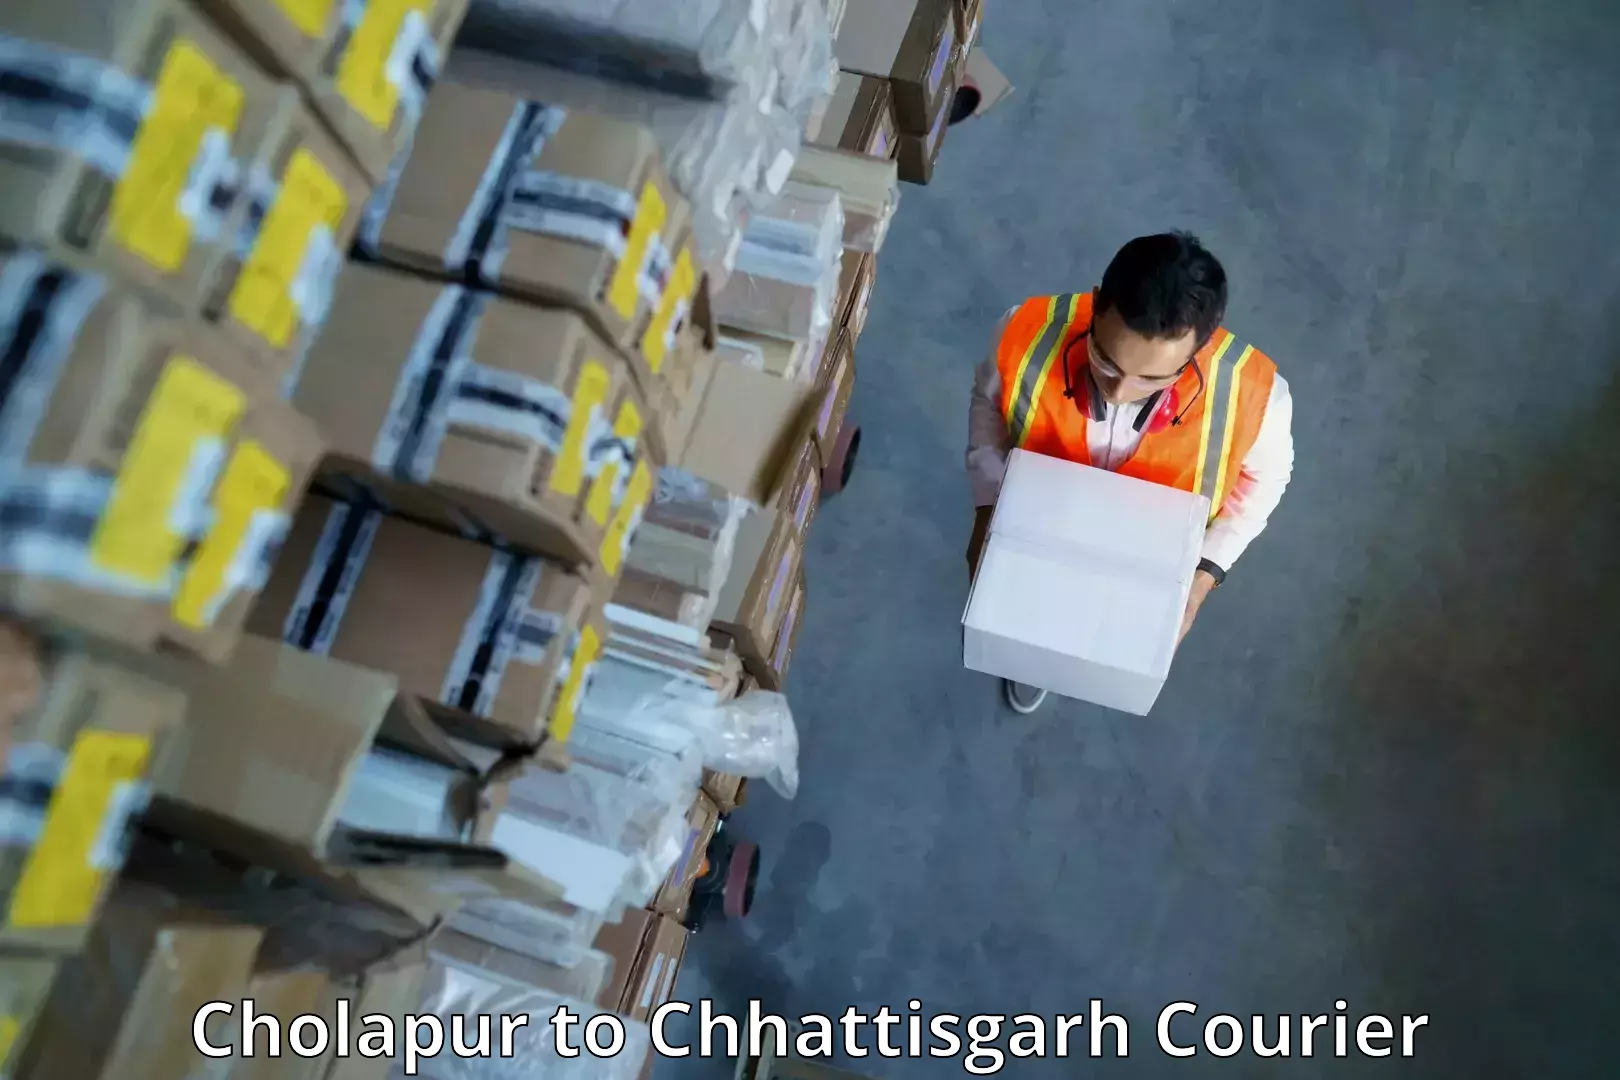 High-speed parcel service Cholapur to Baramkela